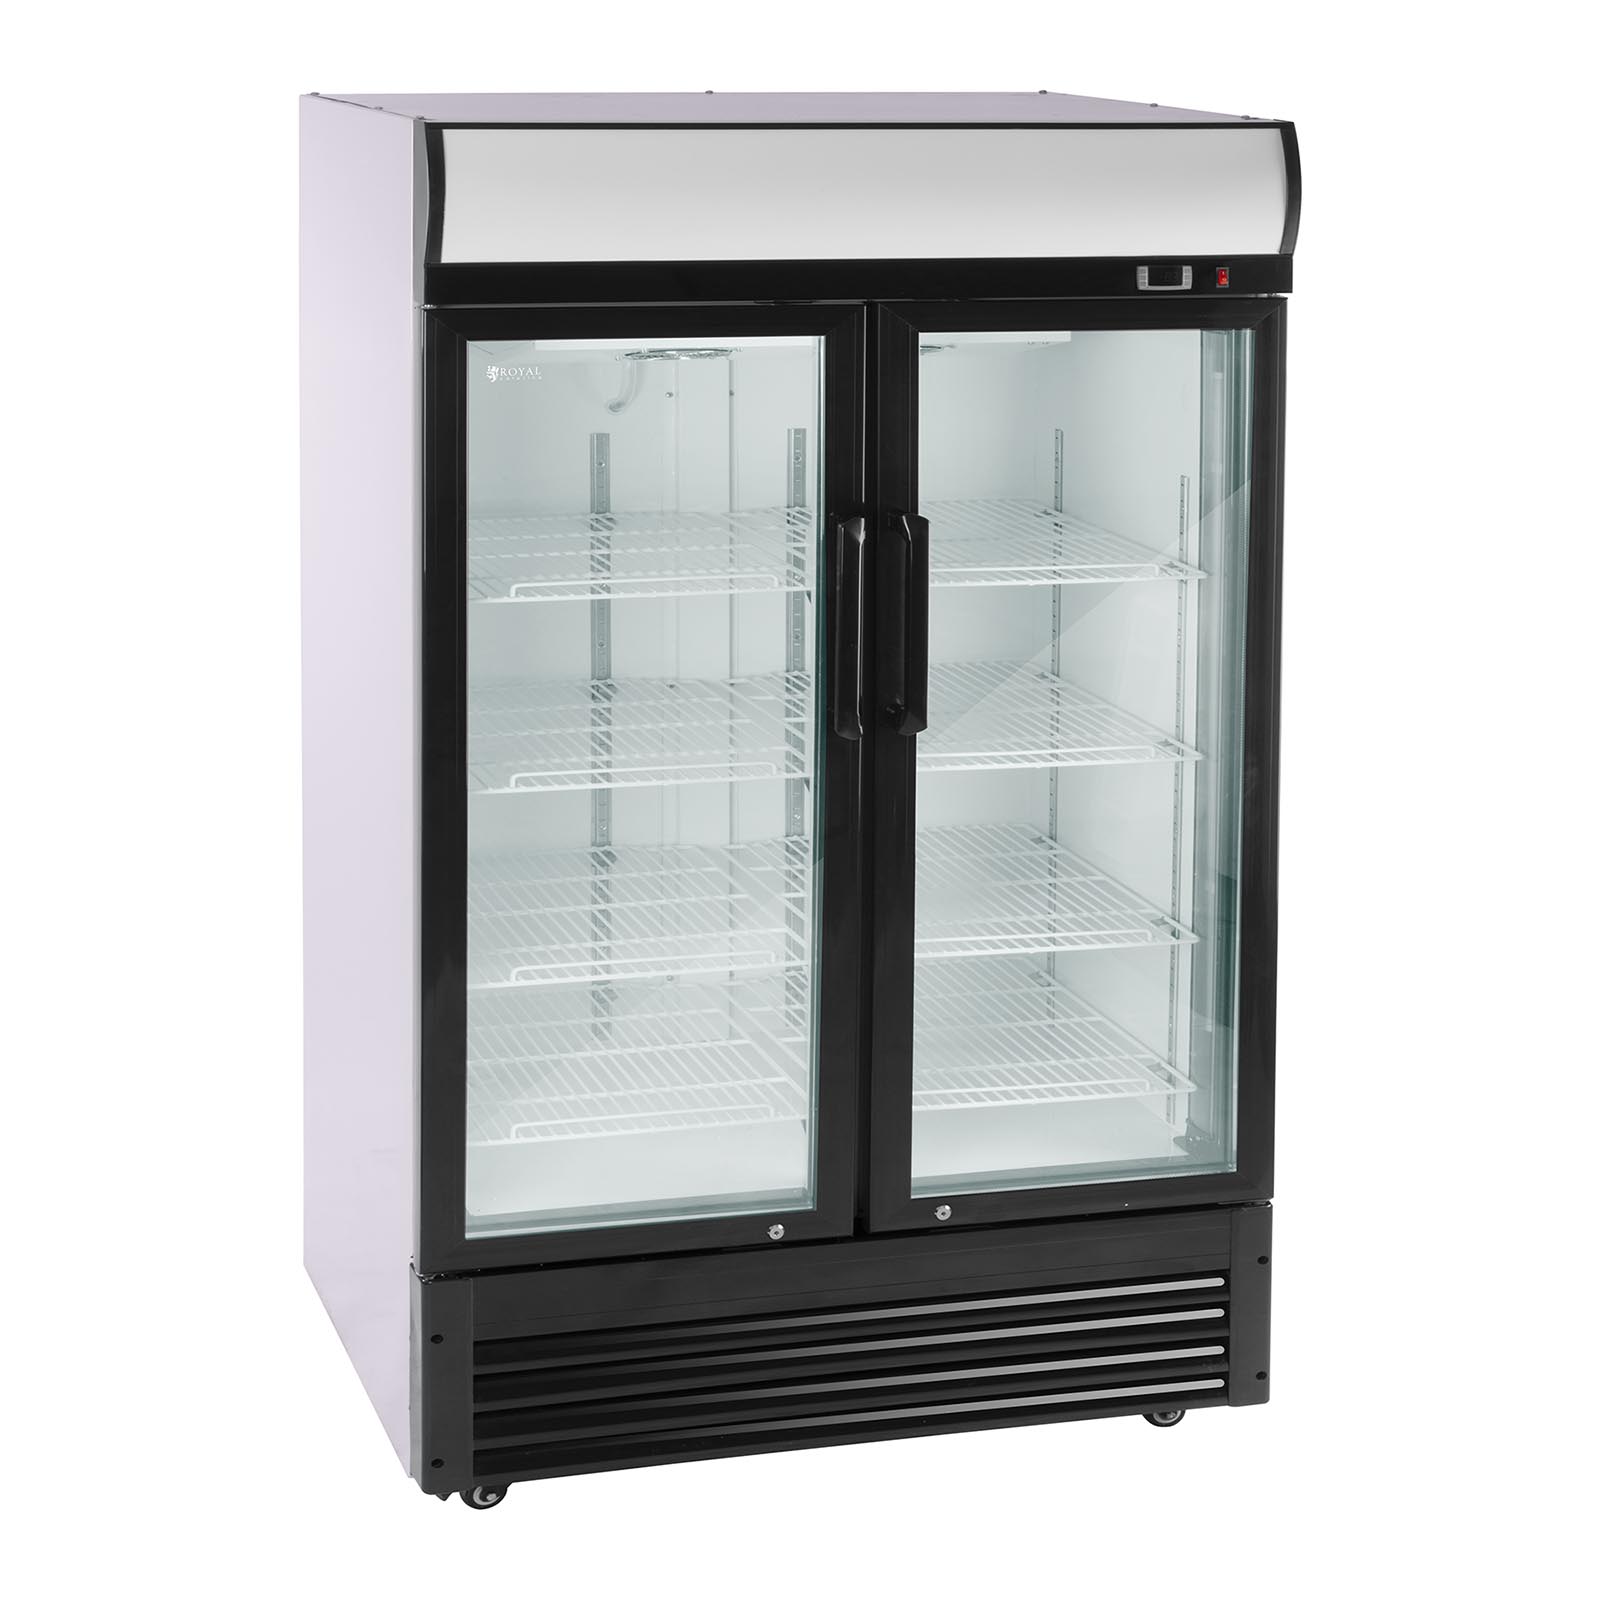 Arca refrigeradora - 880 l